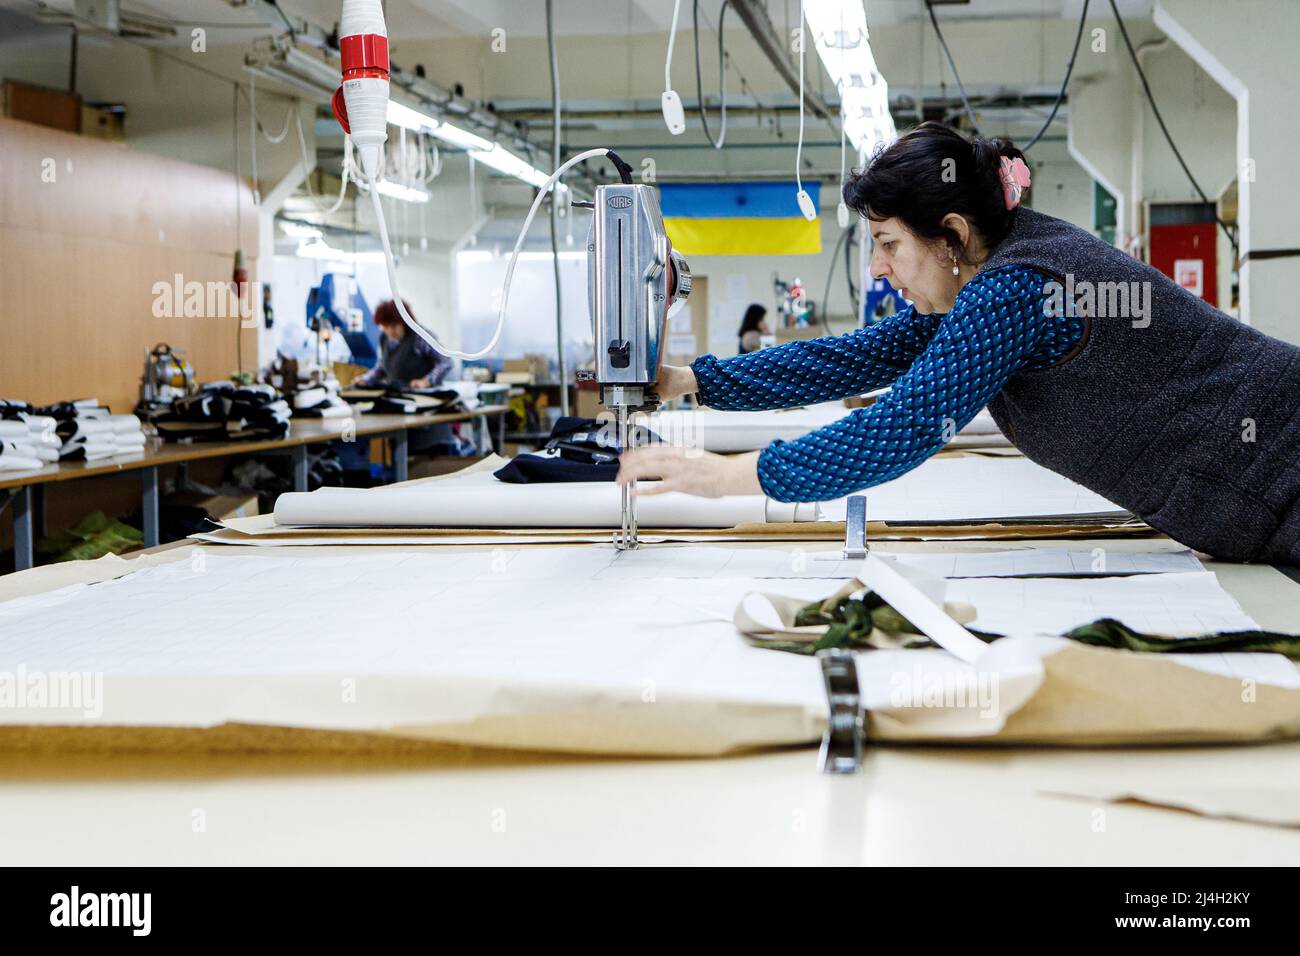 La fabbrica di abbigliamento di Uzhhorod produce borse tattiche, coperture  per giubbotti antiproiettile, IIFS e kit di pronto soccorso per i difensori  ucraini che hanno sostituito i loro prodotti usuali dall'inizio  dell'invasione